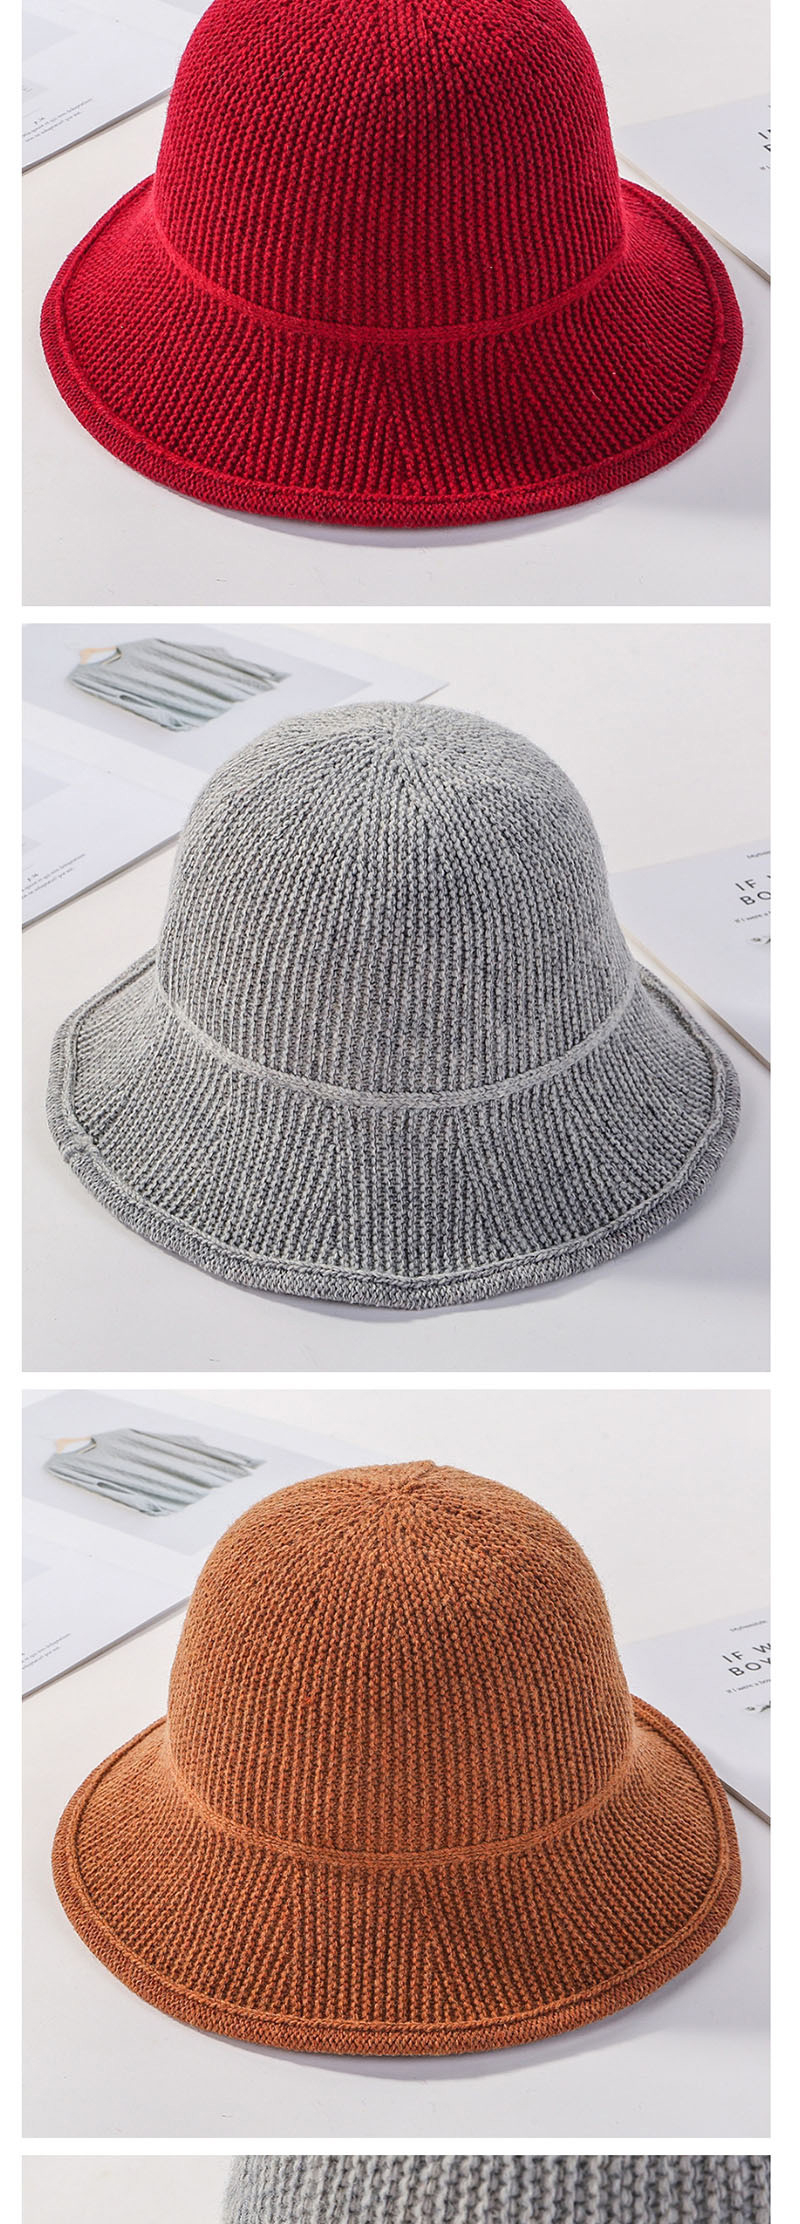 Fashion Khaki Knitted Wool Fisherman Hat,Beanies&Others